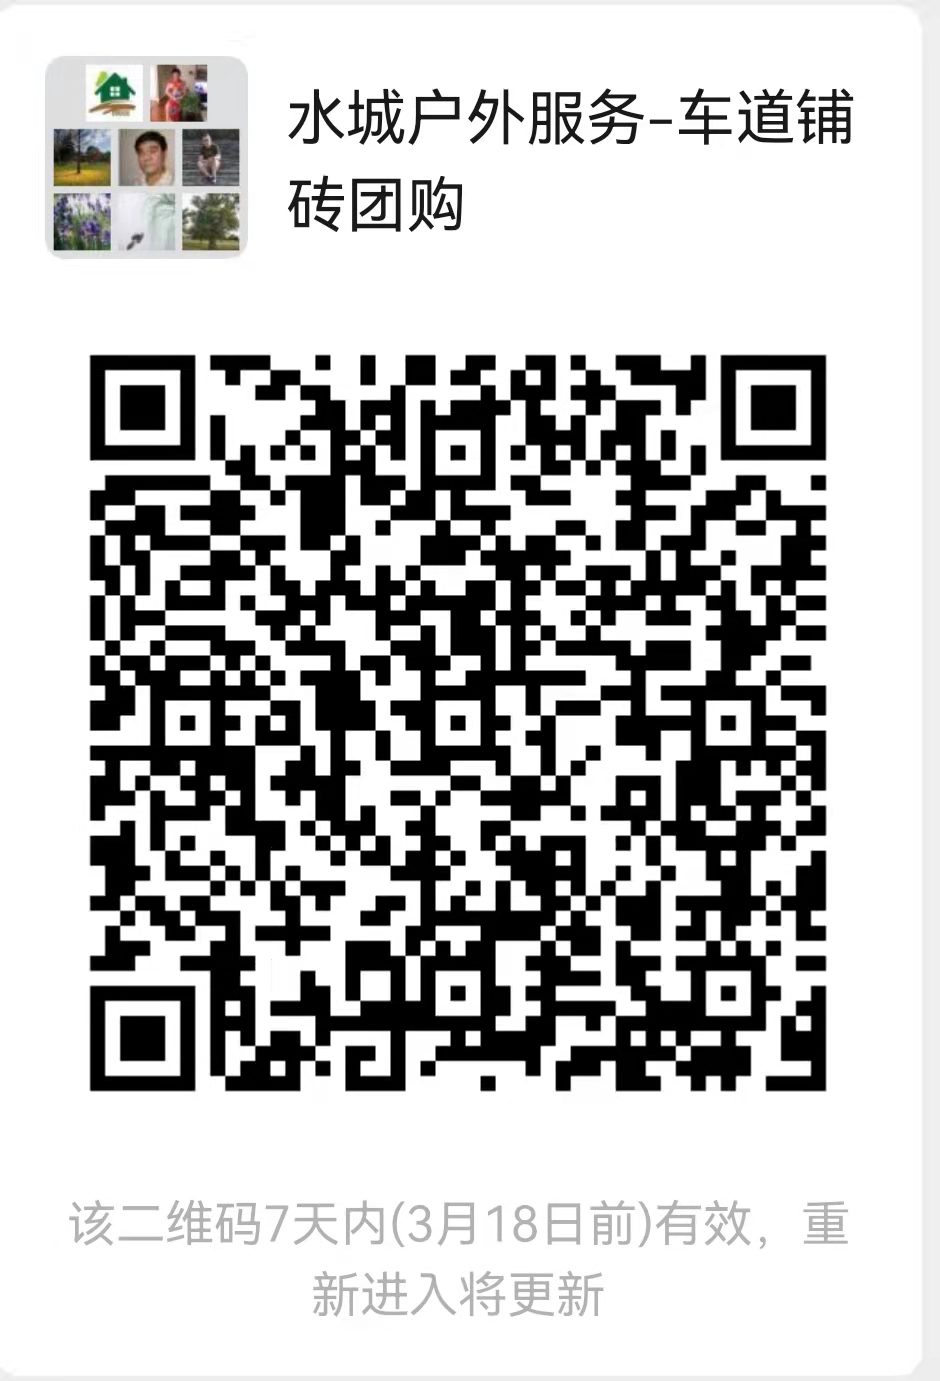 WeChat Image_20220311215410.jpg